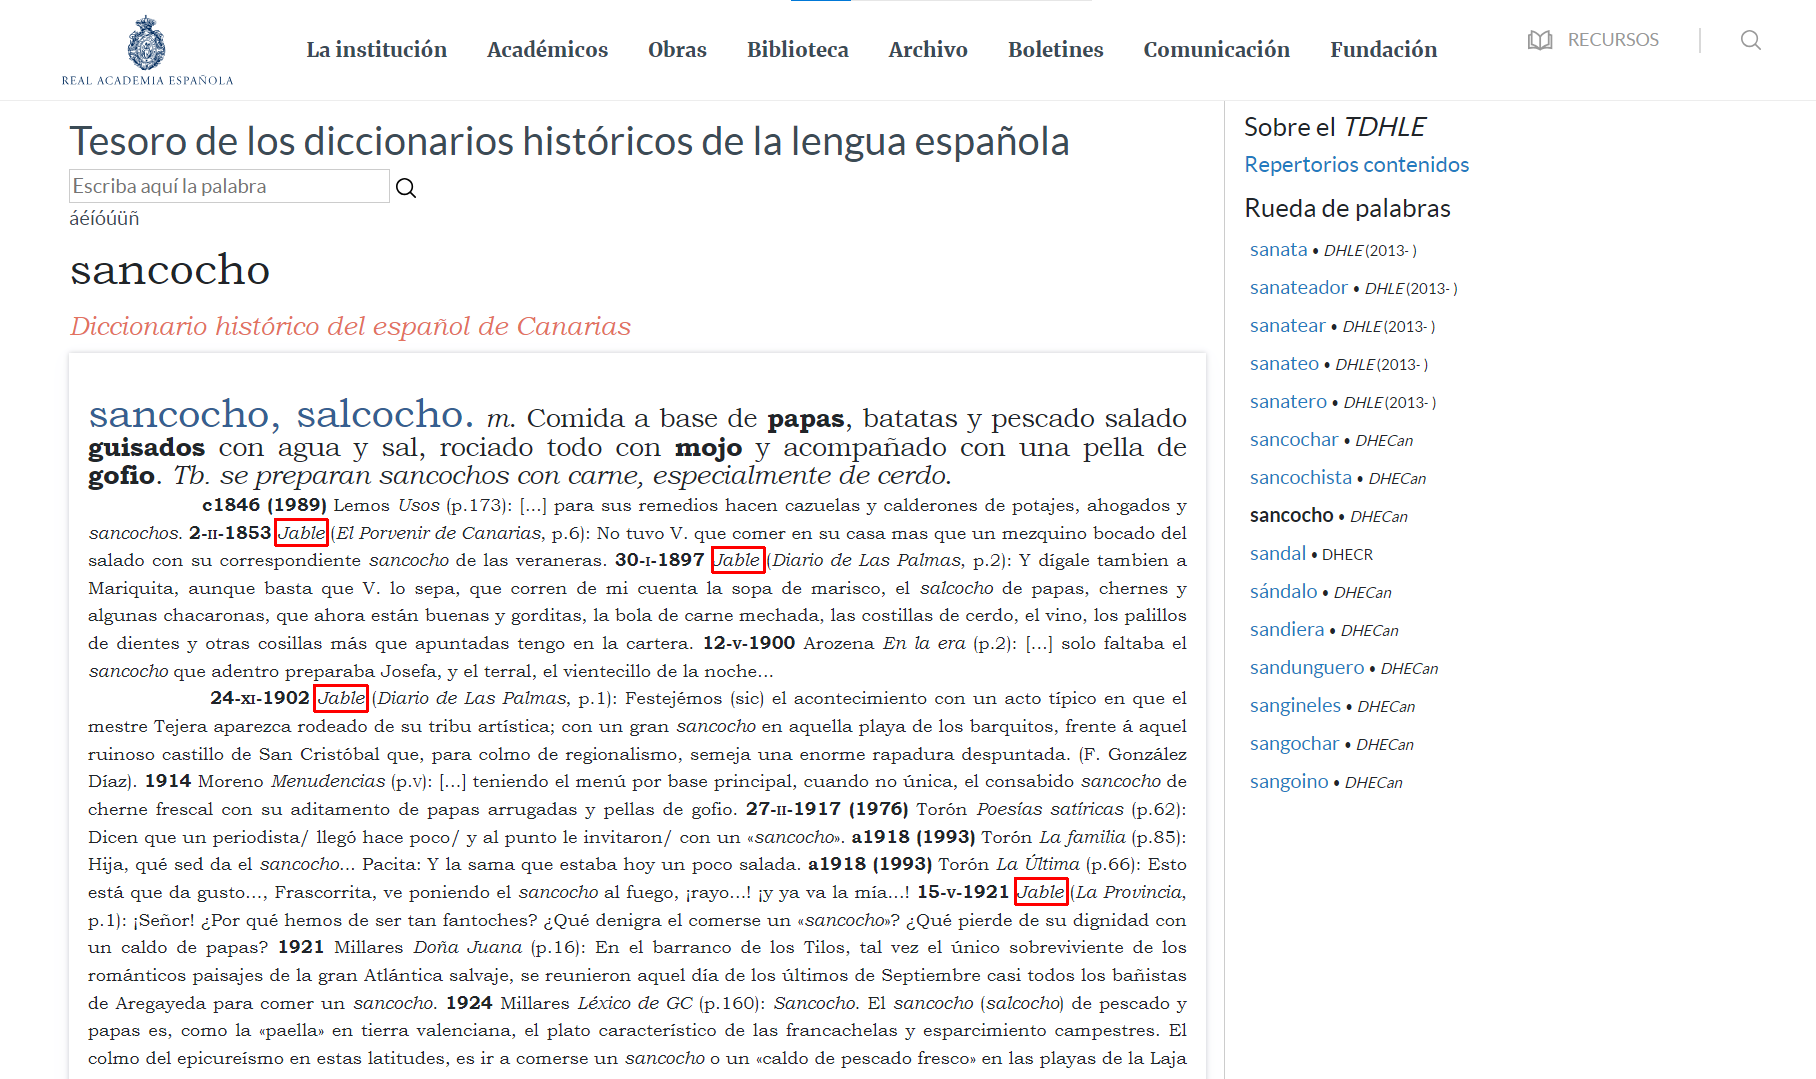 Vista de la entrada "sancocho" en el portal Tesoro de los diccionarios históricos de la Lengua Española, donde se marcan en rojo las apariciones de "Jable" como fuente."